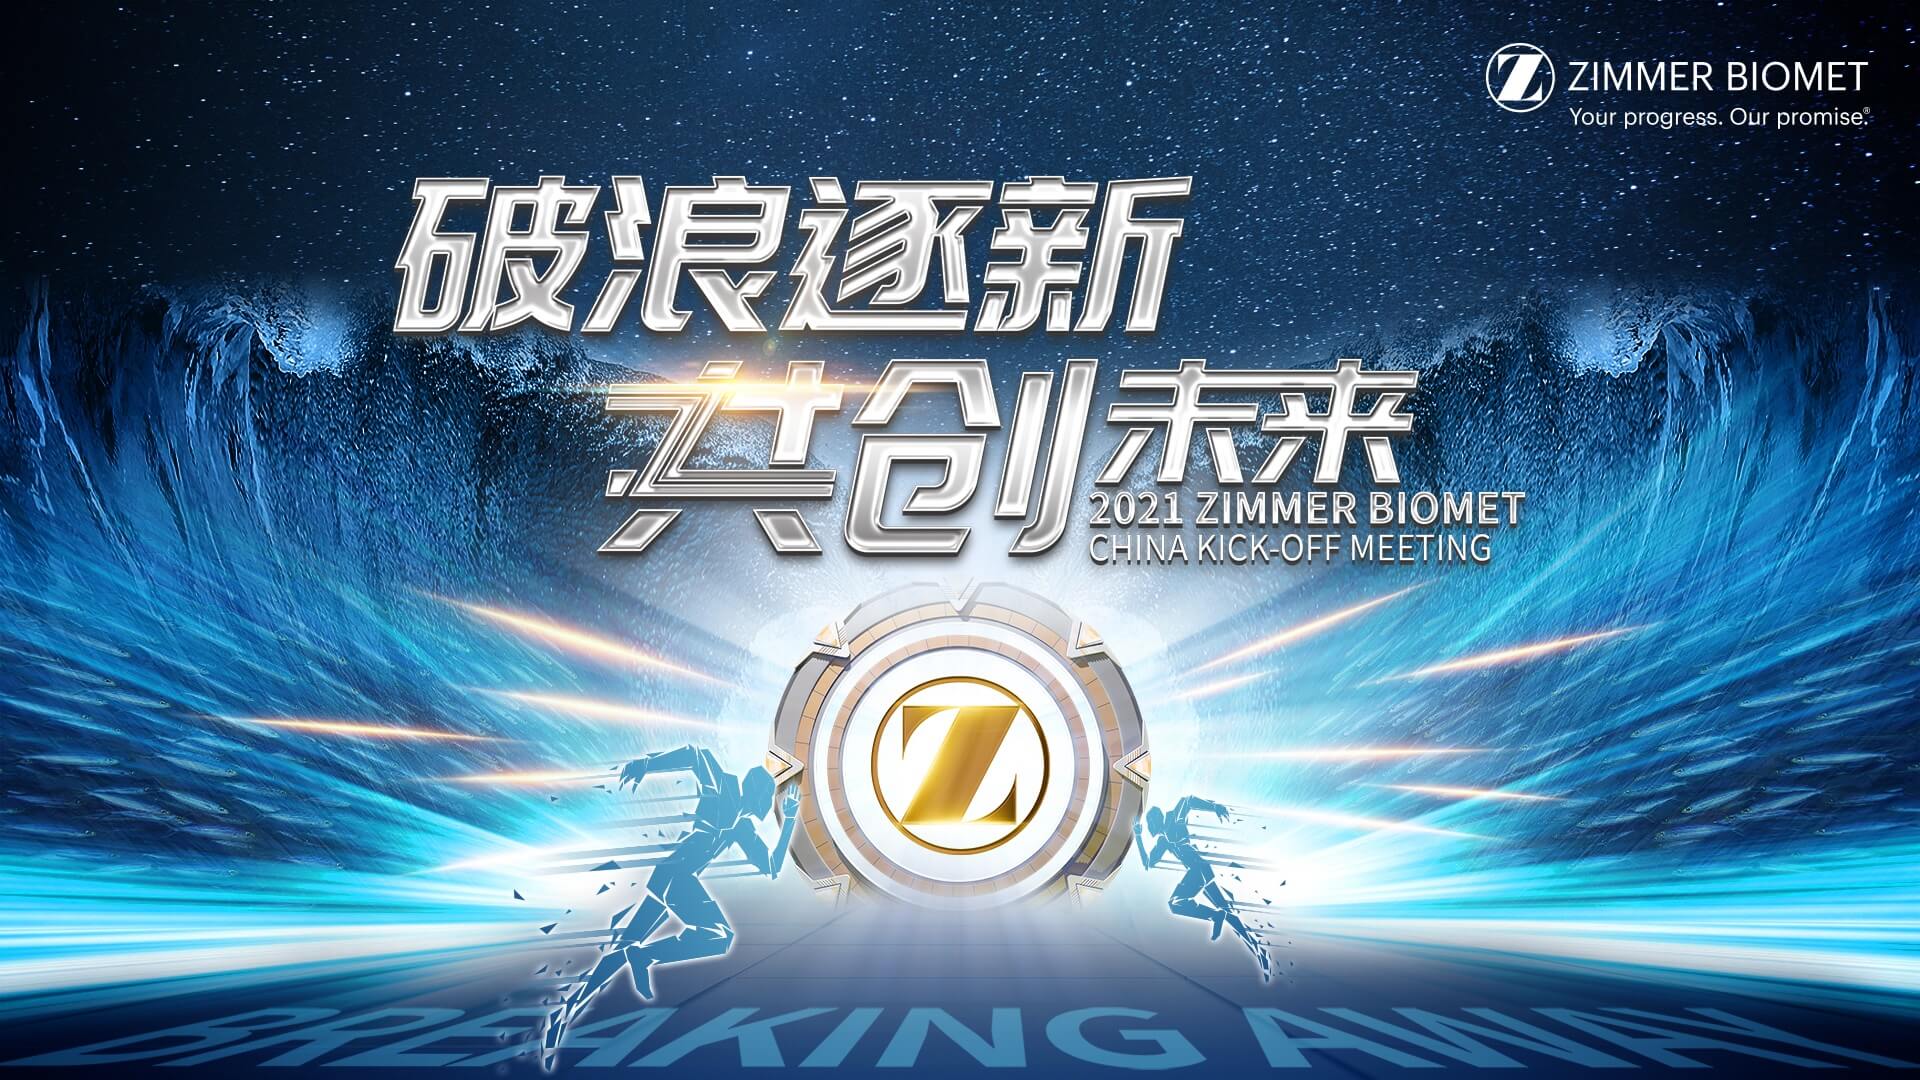 輕直播全程助力ZIMMER BIOMET 2021中國啟動會圓滿落幕